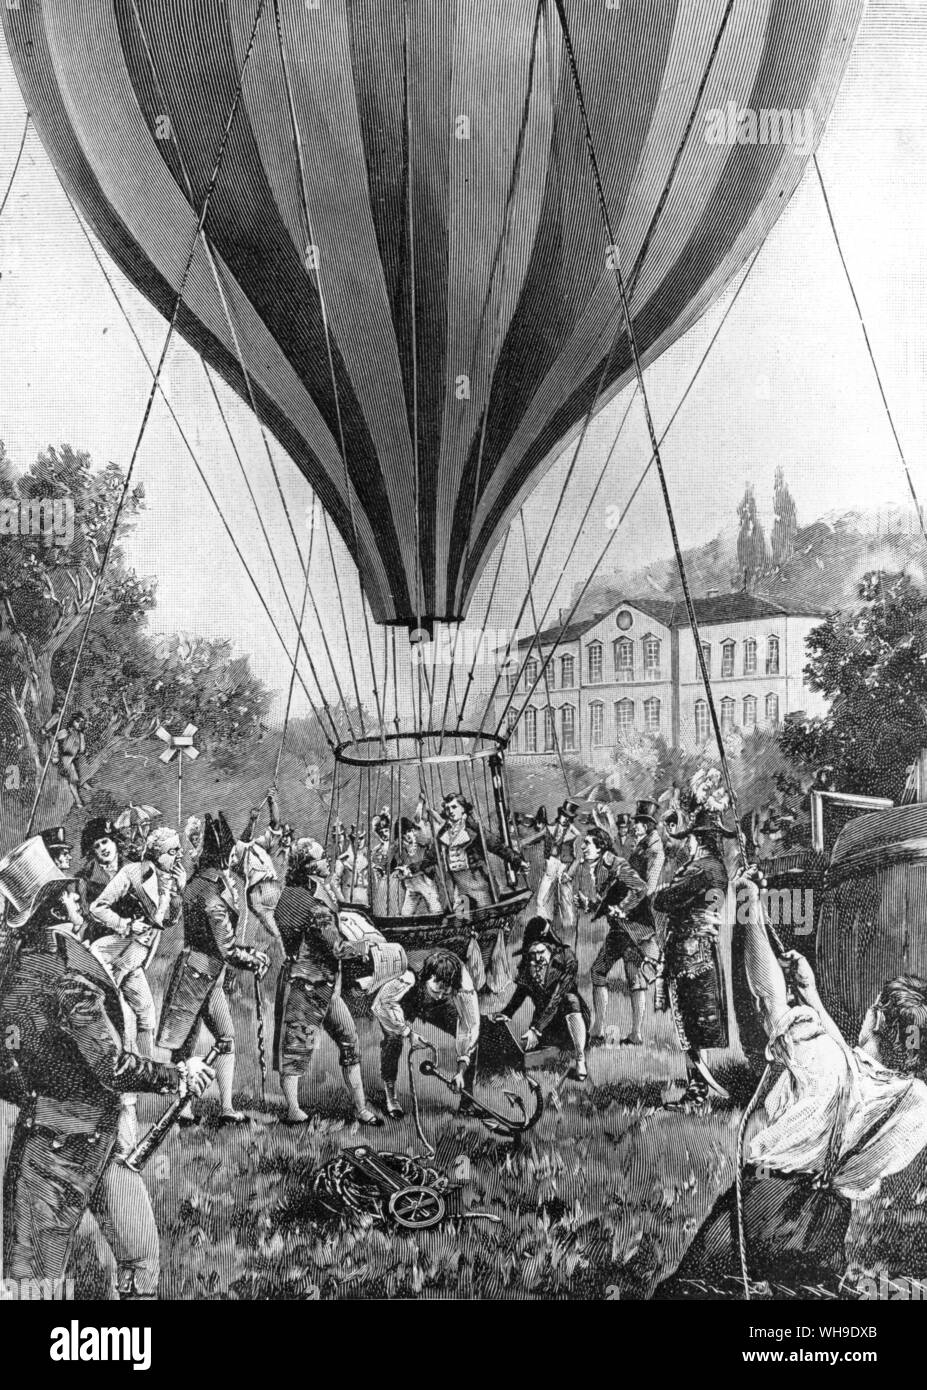 Il 16 settembre 1804, Humboldt's amico Gay-Lussac realizzato un notevole solo salita a palloncino da Parigi al fine di effettuare osservazioni scientifiche in alta quota. Egli ha raggiunto un altezza di 23.000 piedi, battendo così Humboldt's proprio mondo altitudine record sul Chimborazo Foto Stock